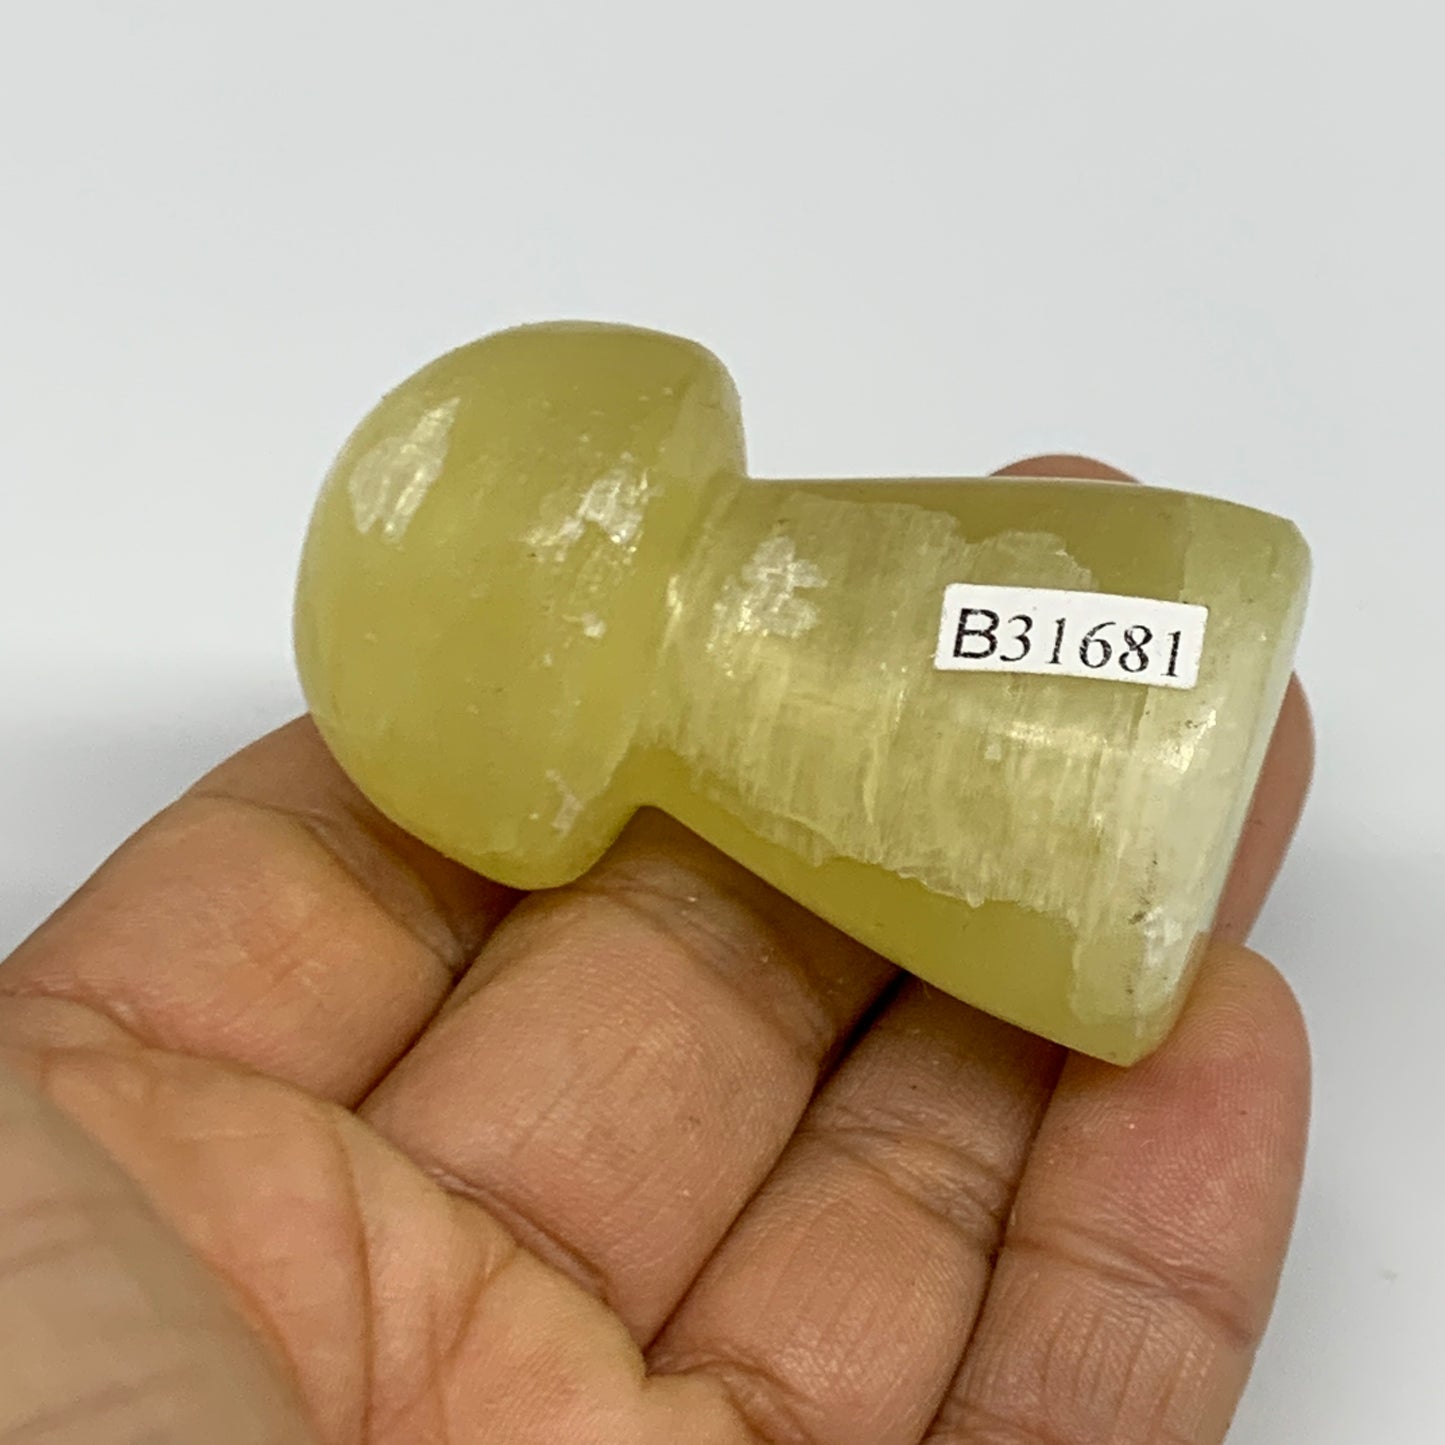 79.4g, 2"x1.2" Natural Lemon Calcite Mushroom Gemstone @Pakistan, B31681